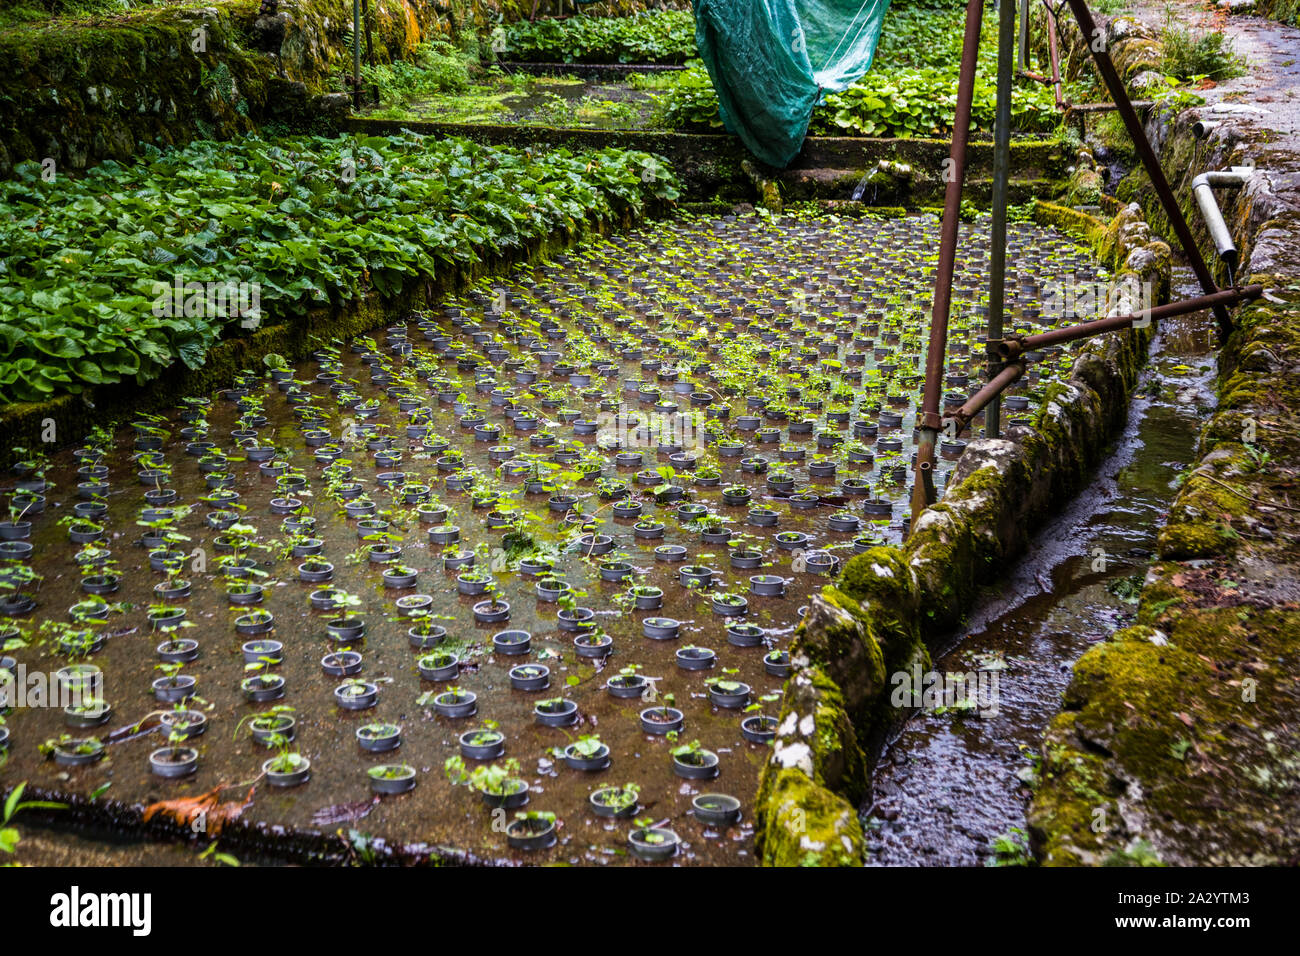 Wasabipflanzen in verschiedenen Wachstumsstadien auf terrassenformig angelegten Feldern. Wasabizucht ist eine aufwändige und mühsame Arbeit. Die Wasabibauern auf Izu haben Probleme mit dem Nachwuchs. Ihre KInder wollen diese mühevolle Arbeit nicht gerne übernehmen Stock Photo